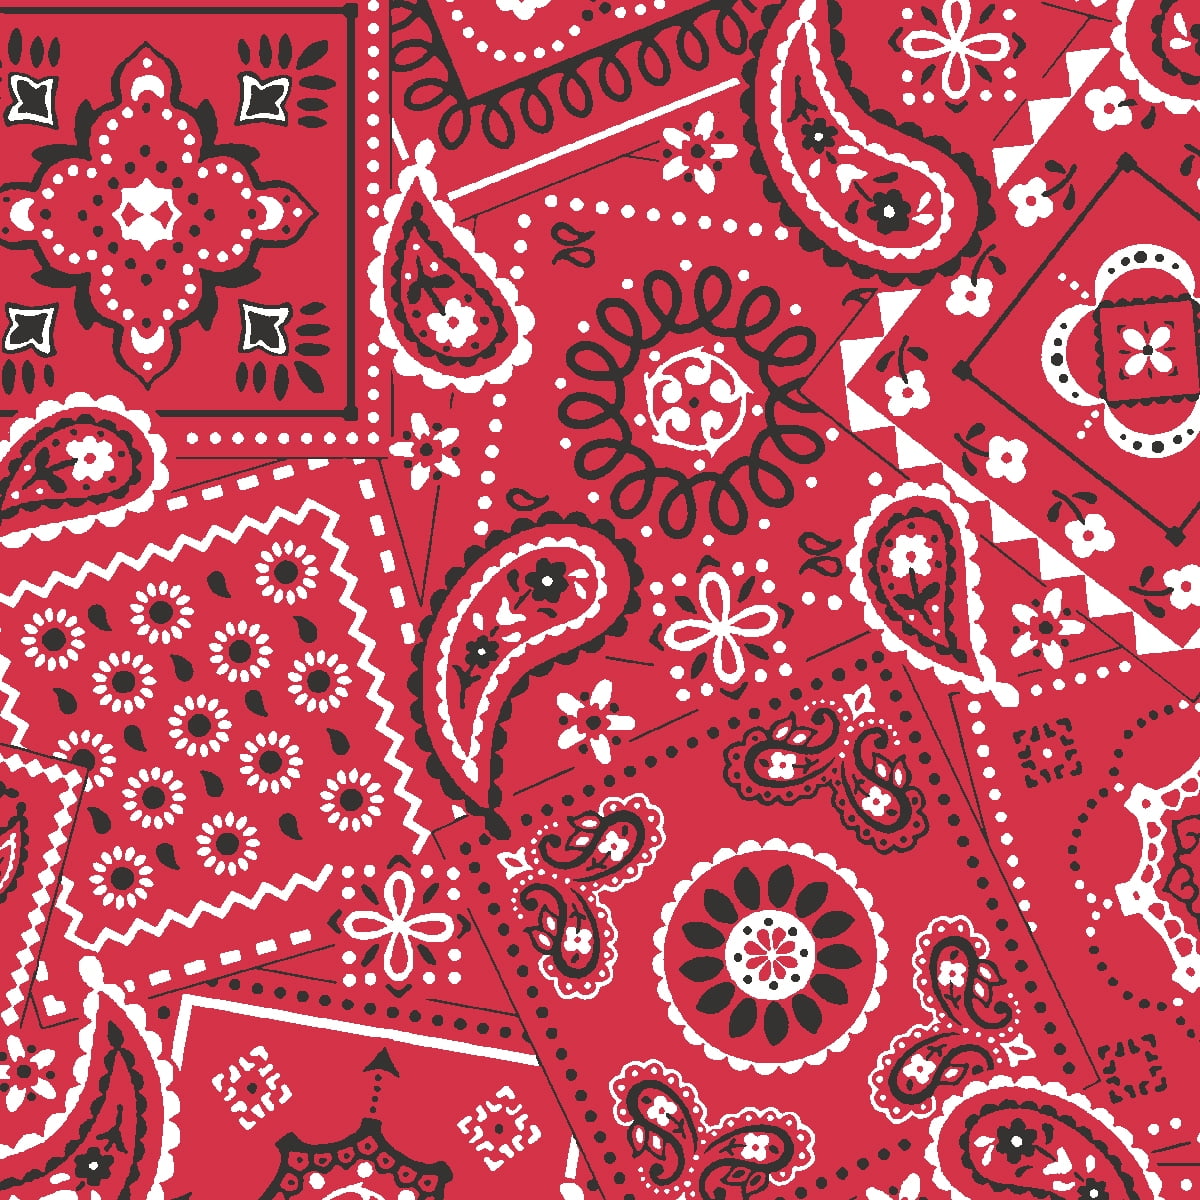 Black & White Bandana Design Red 100% Cotton Fabric 60" Wide